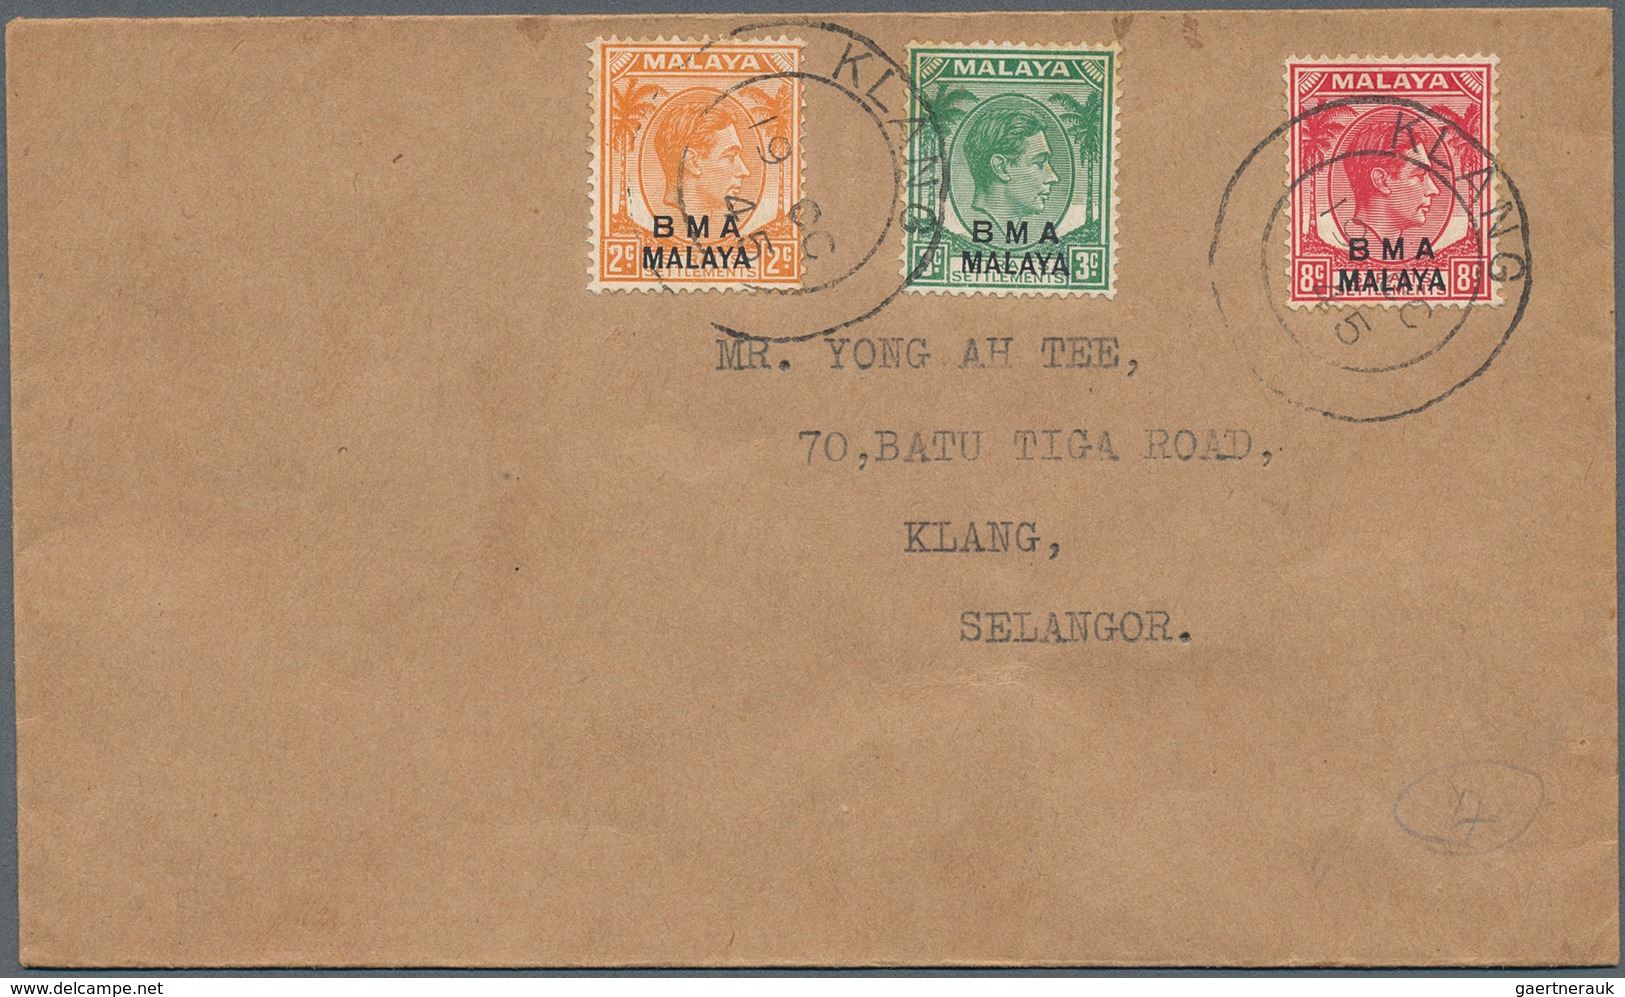 05622 Malaiische Staaten - Britische Militärverwaltung: 1945 (19.10.), KGVI Stamps With 'BMA MALAYA' Opt. - Malaya (British Military Administration)